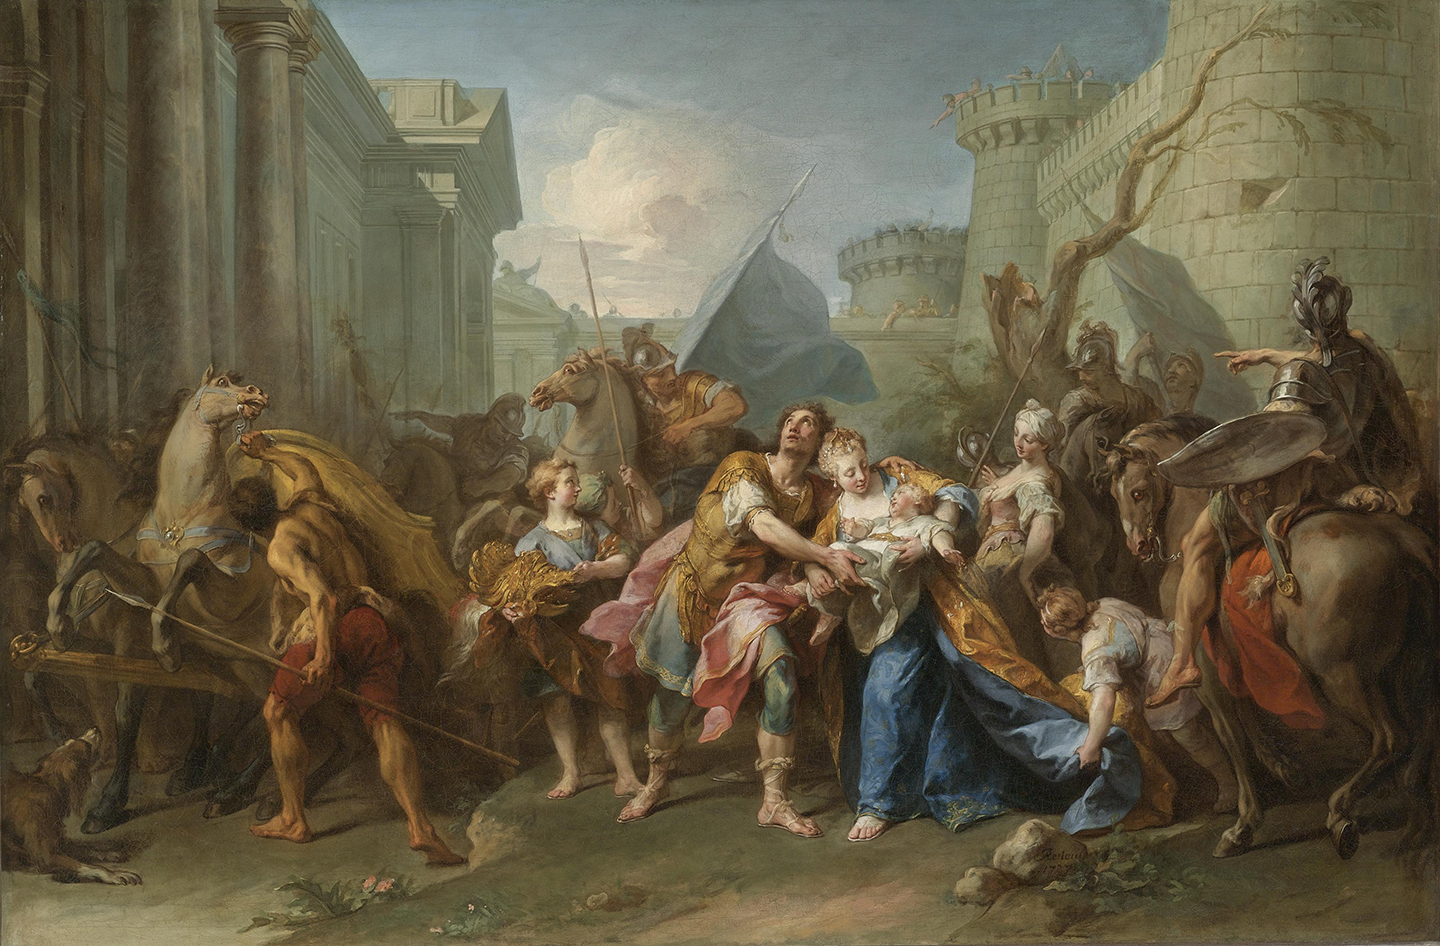 Bức tranh “Hector Taking Leave of Andromache” (Hector từ biệt Andromache) của họa sĩ Jean II Restout vẽ năm 1727. Tranh sơn dầu trên vải canvas. (Ảnh: Tài liệu công cộng)